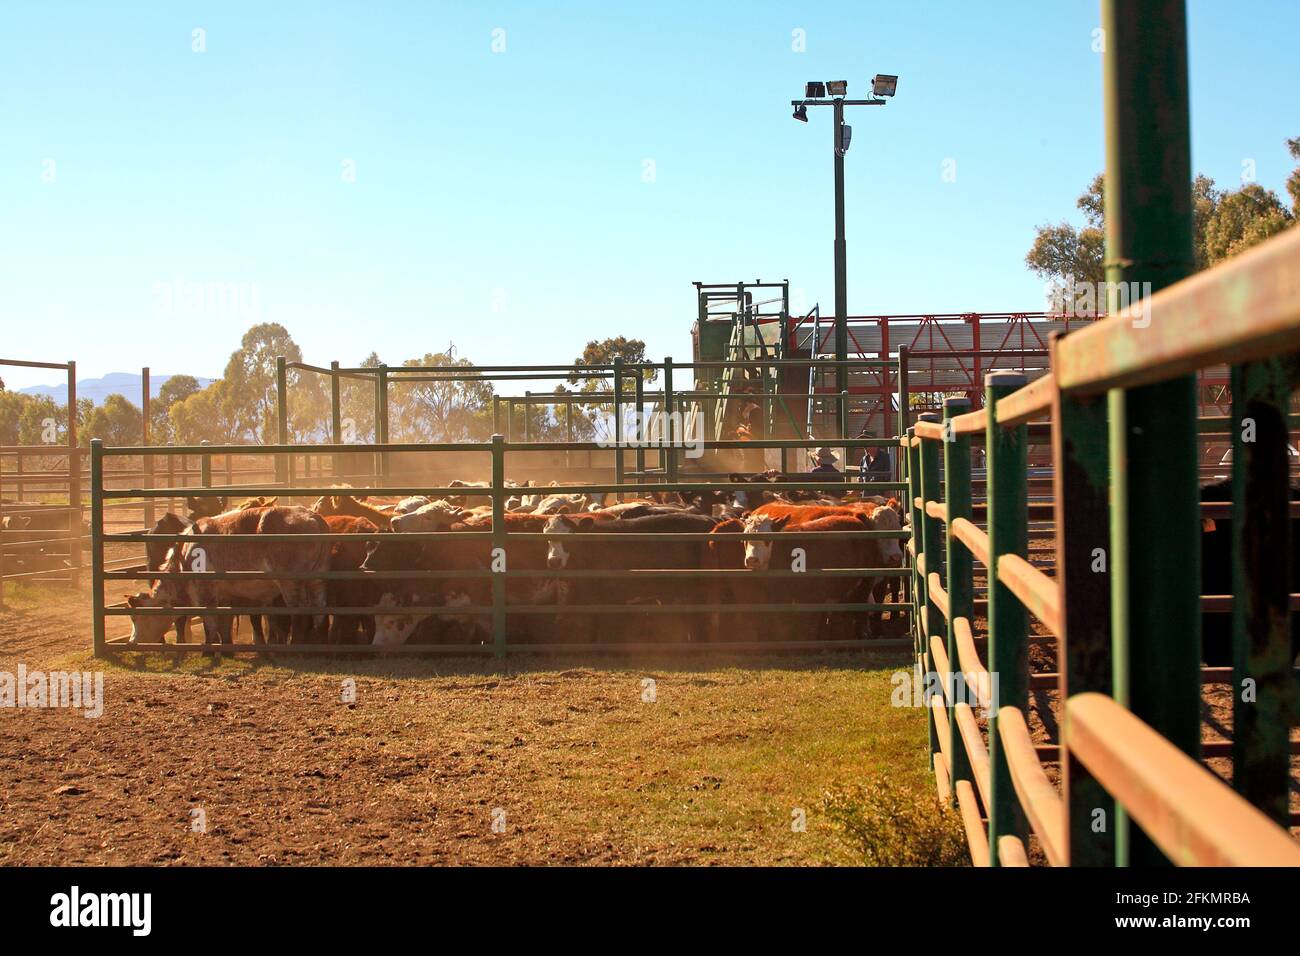 Les bovins dans les parcs à bestiaux sont chargés sur un camion par des rampes de chargement. Narrabri, ouest de la Nouvelle-Galles du Sud, Australie Banque D'Images